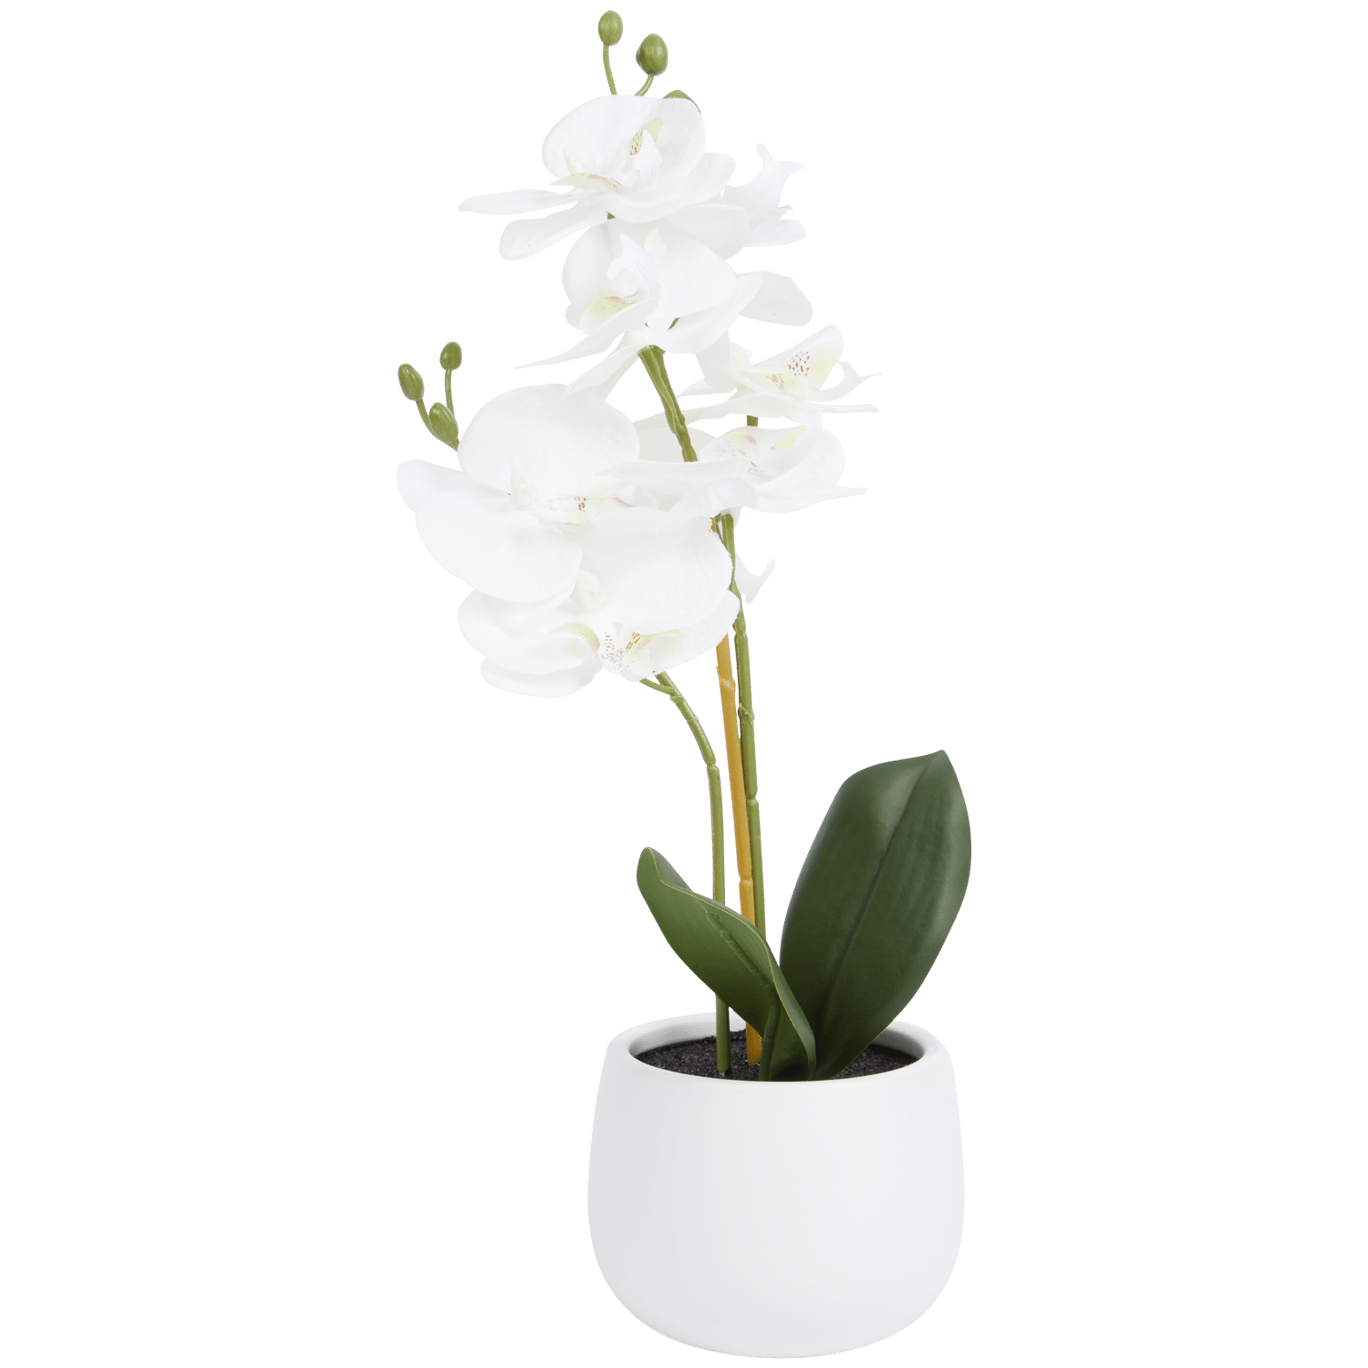 Excellent Flowers kunstorchidee in pot